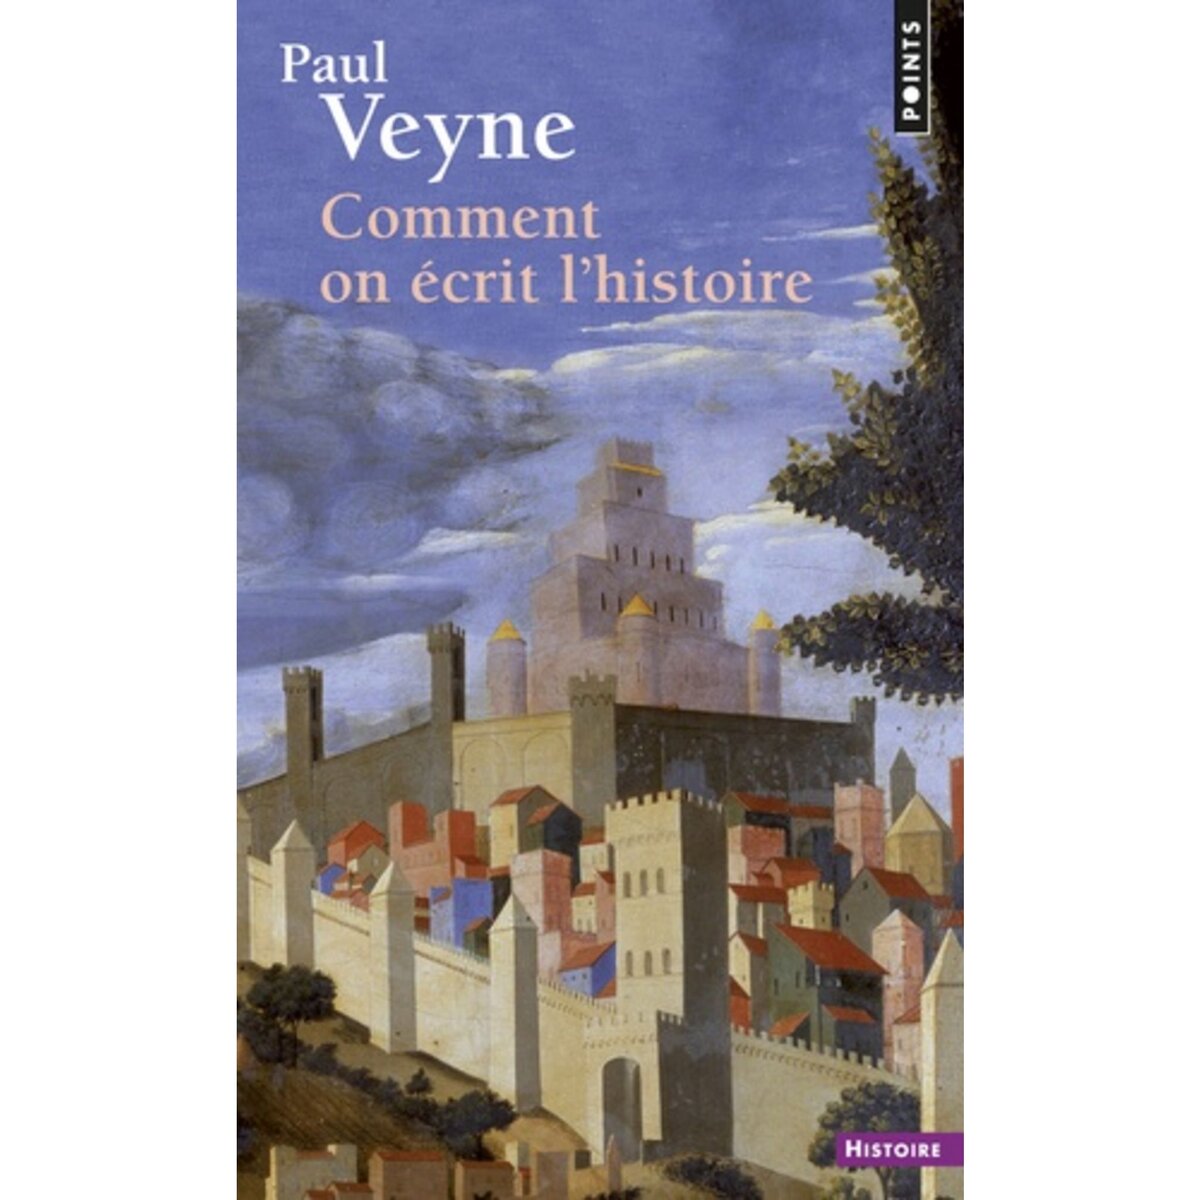  COMMENT ON ECRIT L'HISTOIRE, Veyne Paul